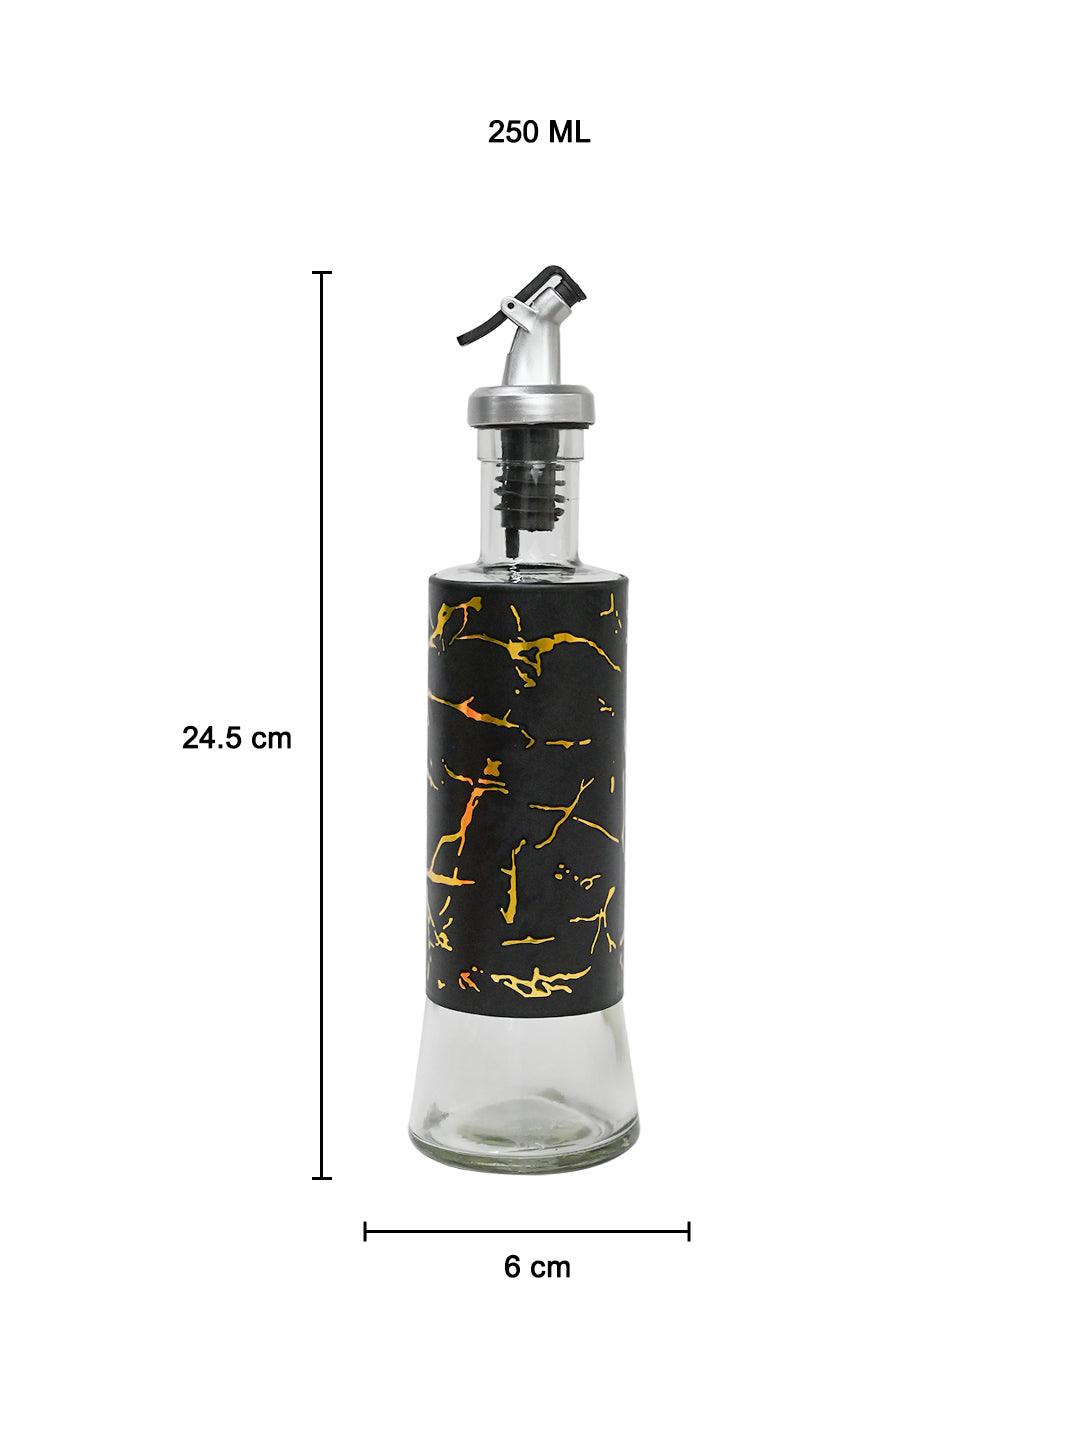 Marble Oil Dispenser - 250Ml, Black - MARKET 99